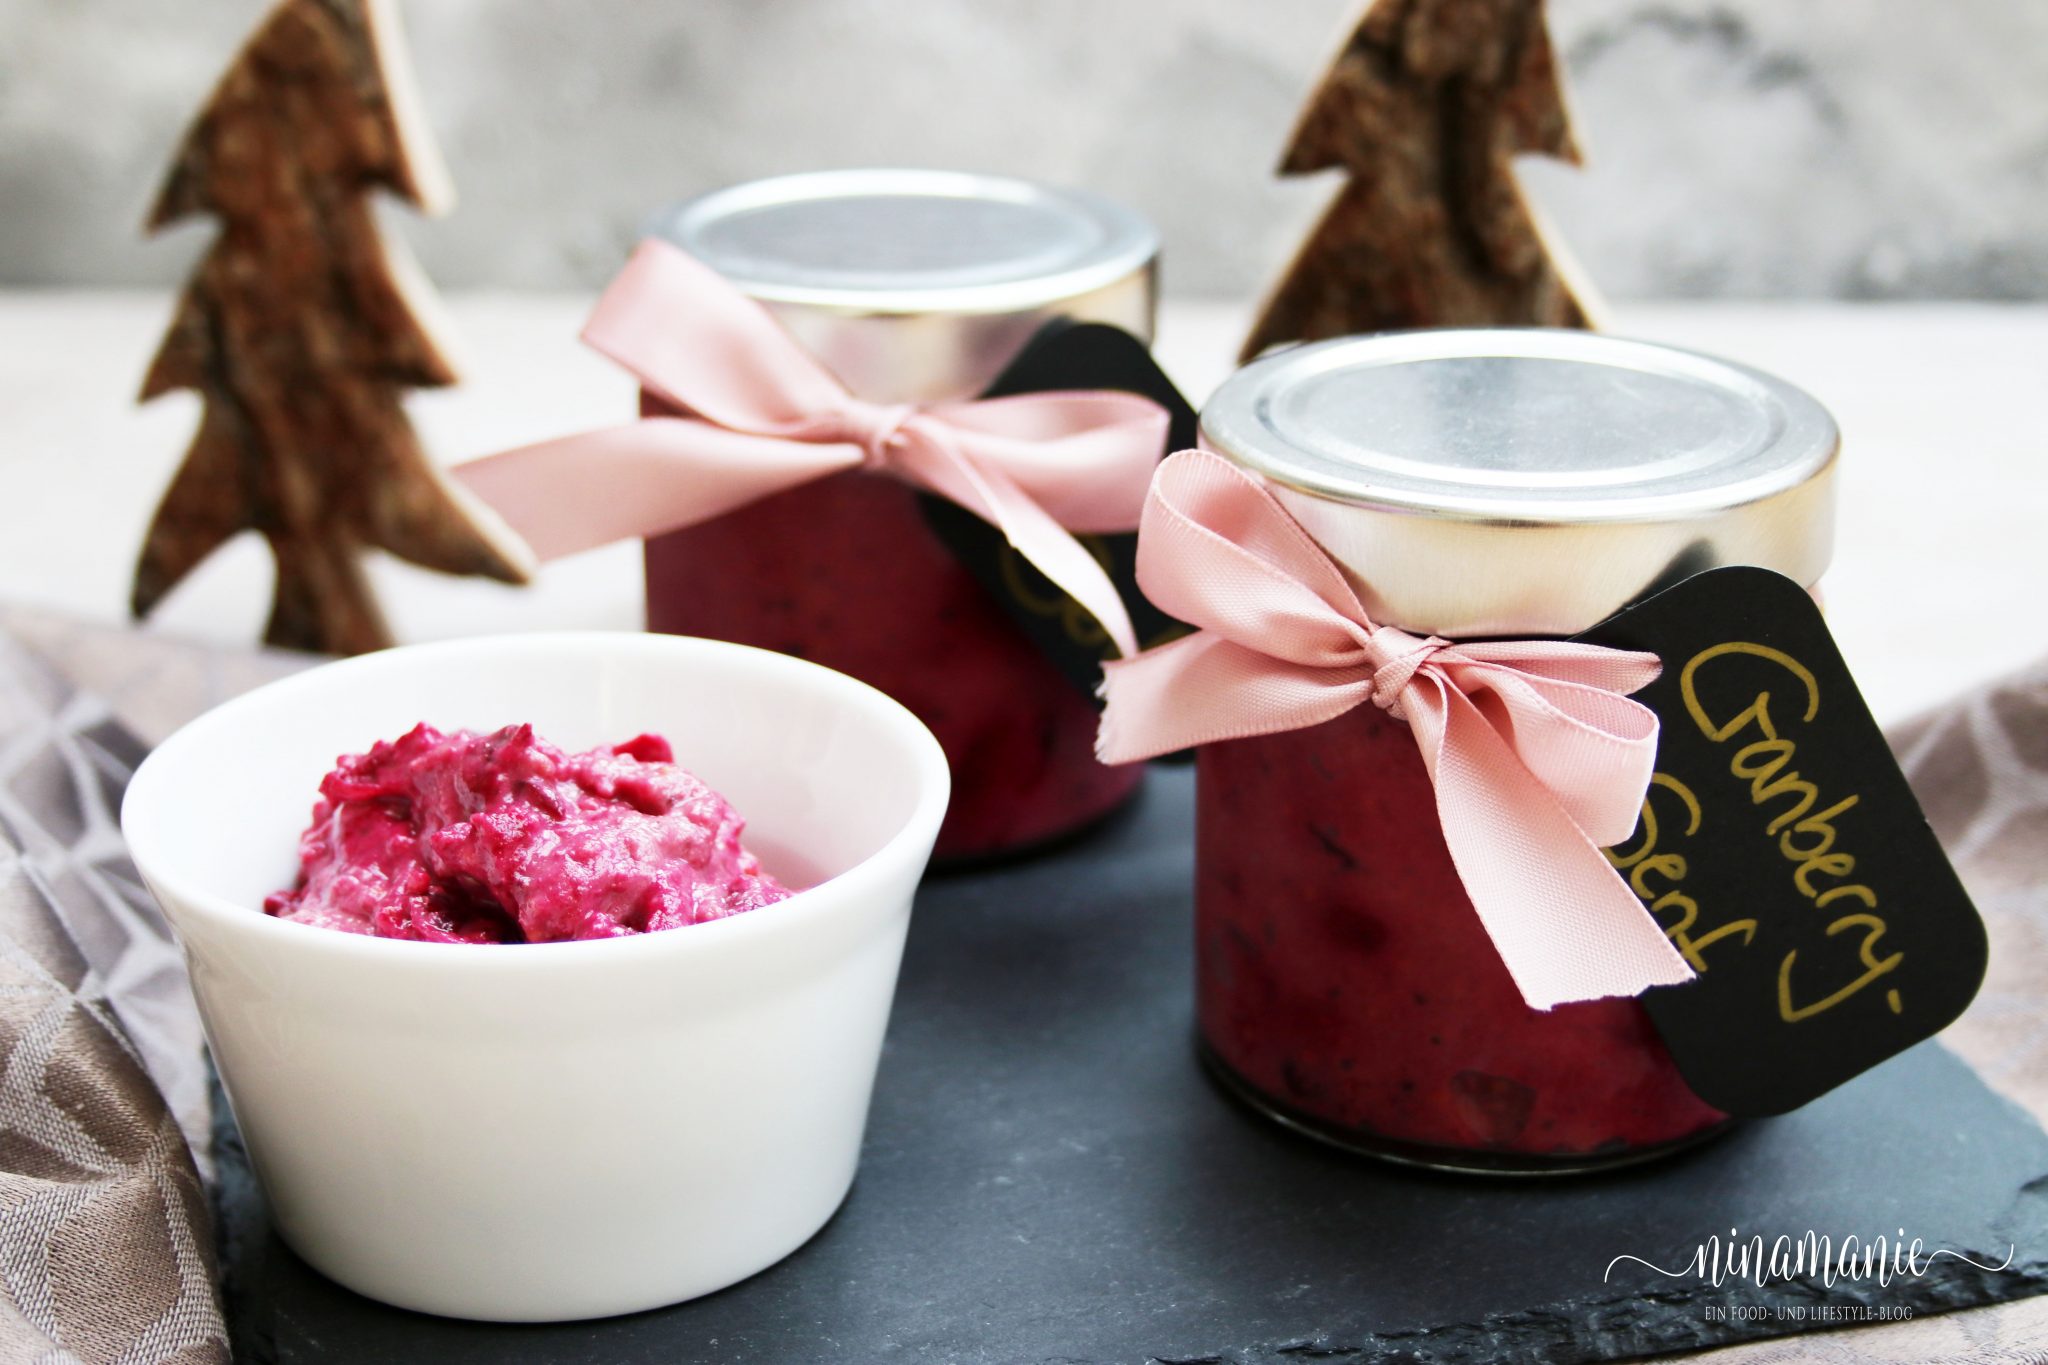 Cranberry-Senf - ein feines Geschenk aus der Küche - Ninamanie